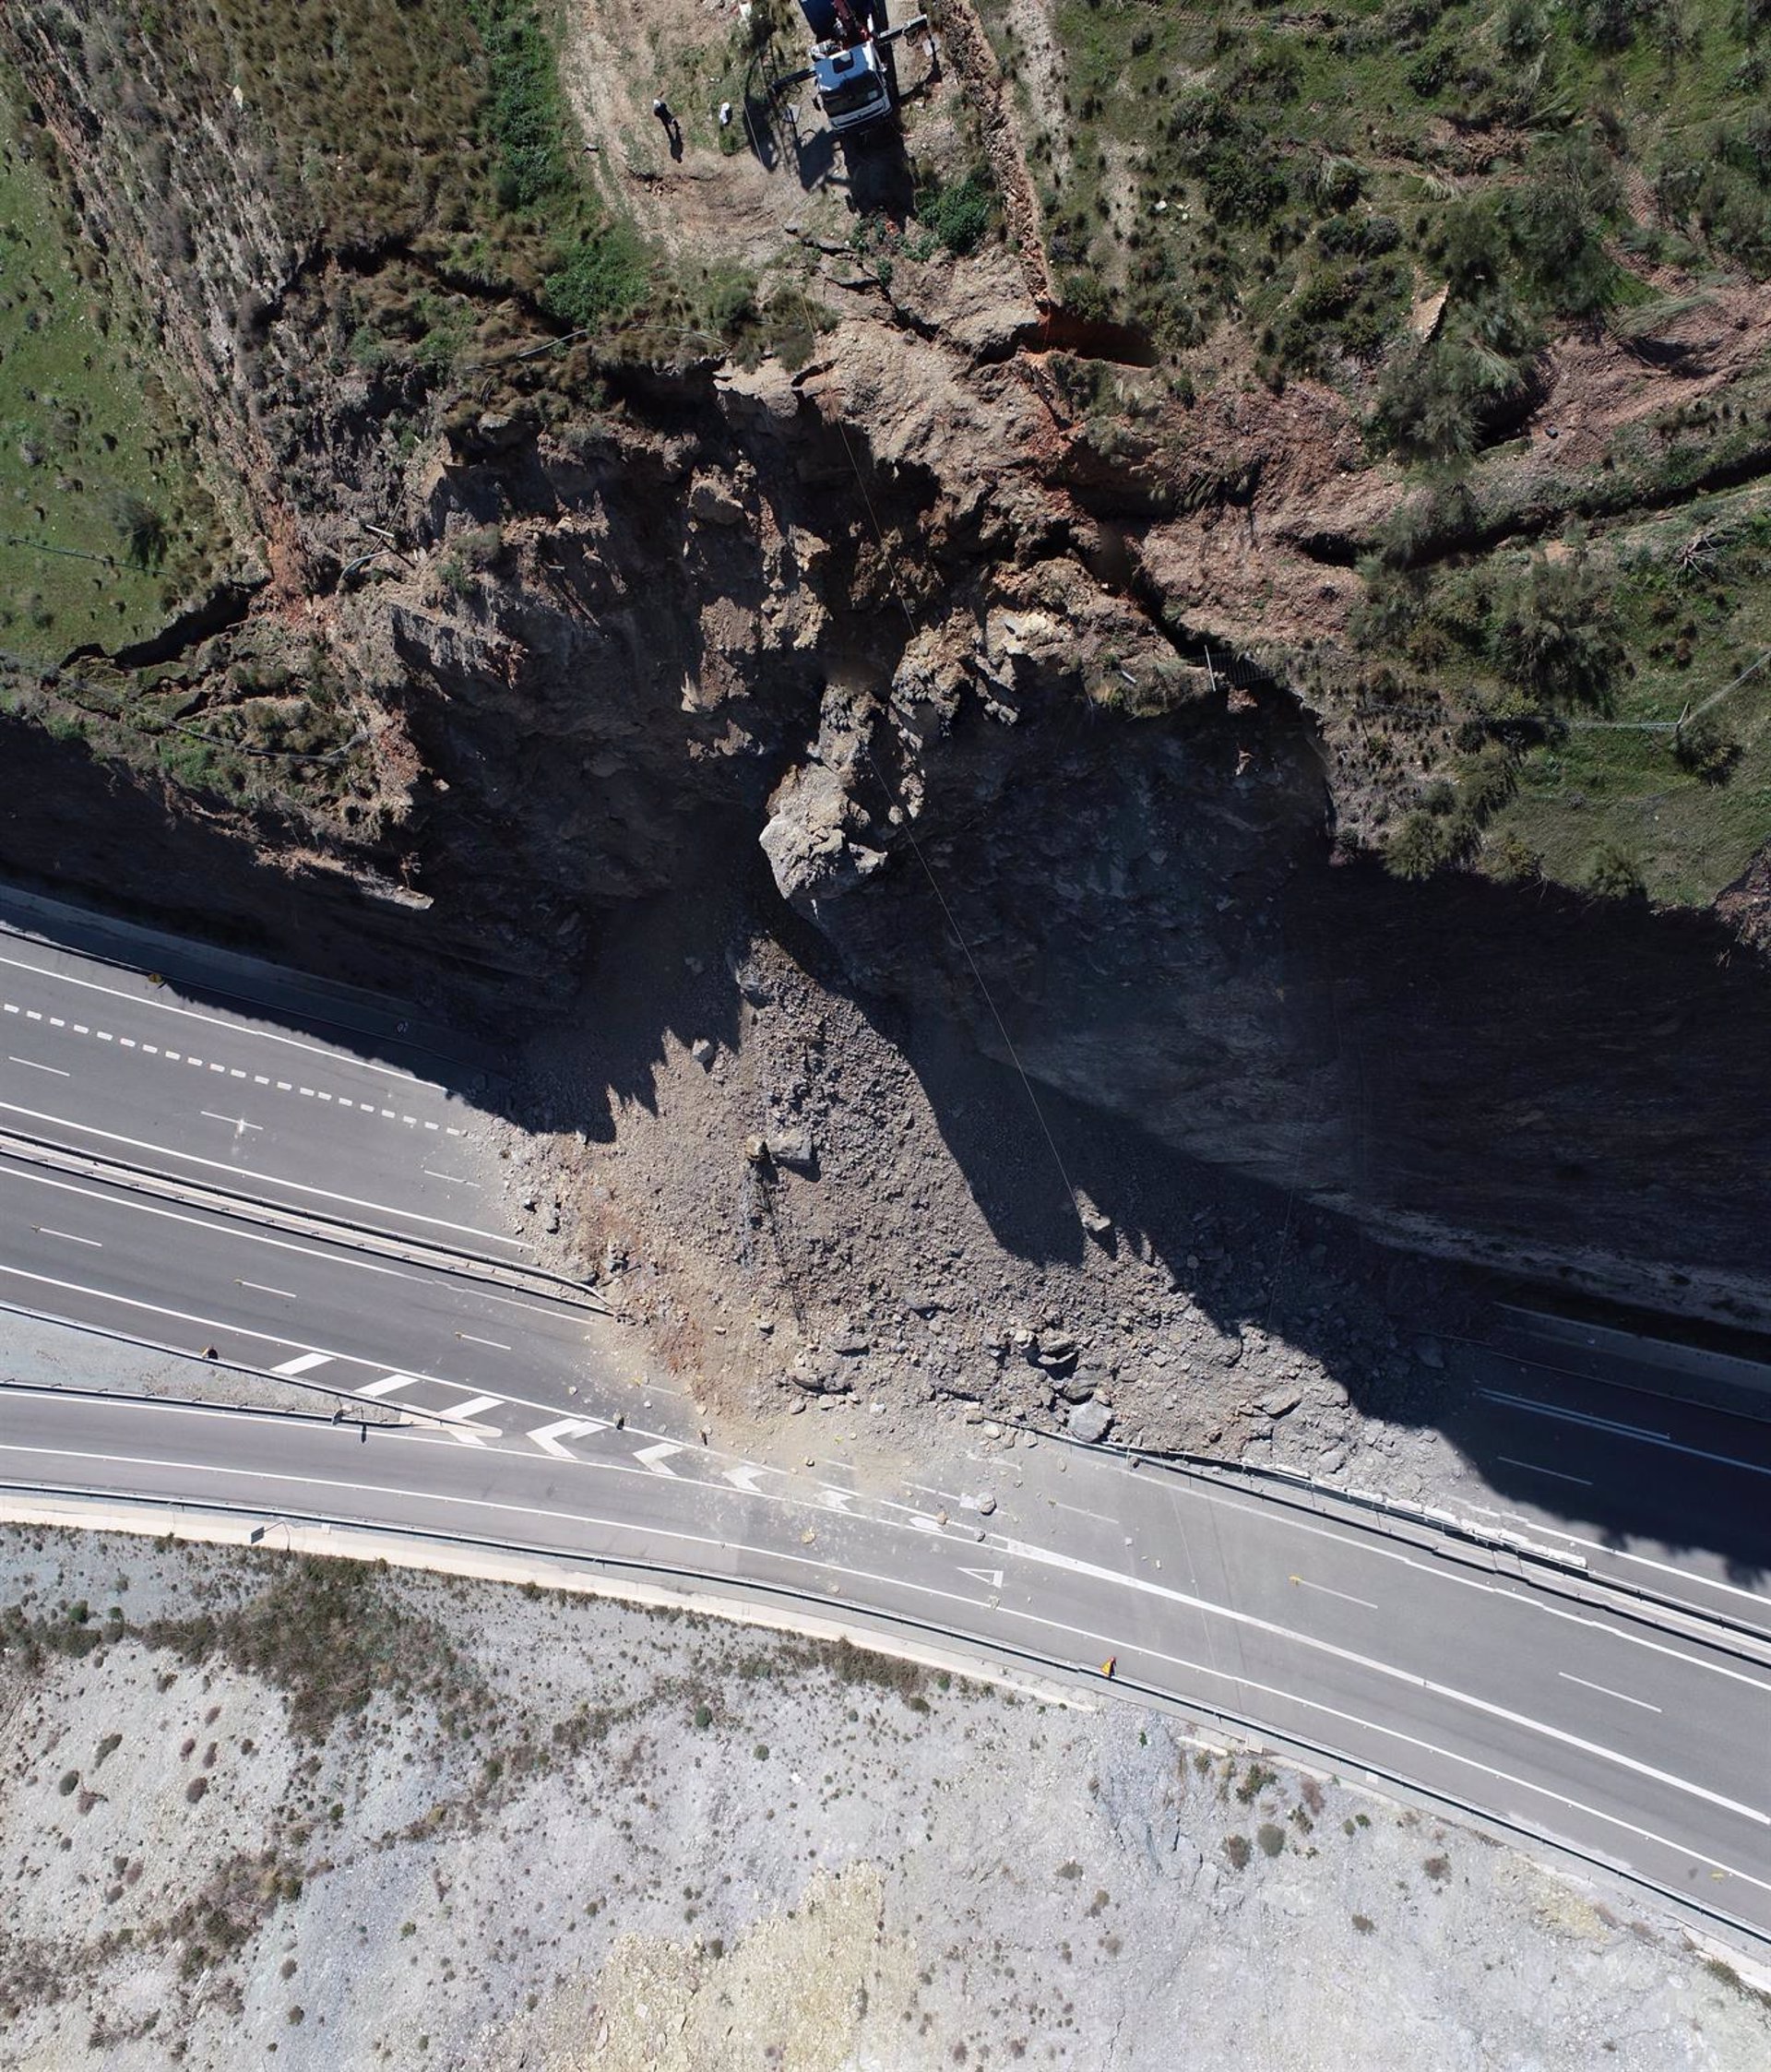 Abre al tráfico este viernes el tramo de la A-7 entre Carchuna y Castell de Ferro afectado por un derrumbe